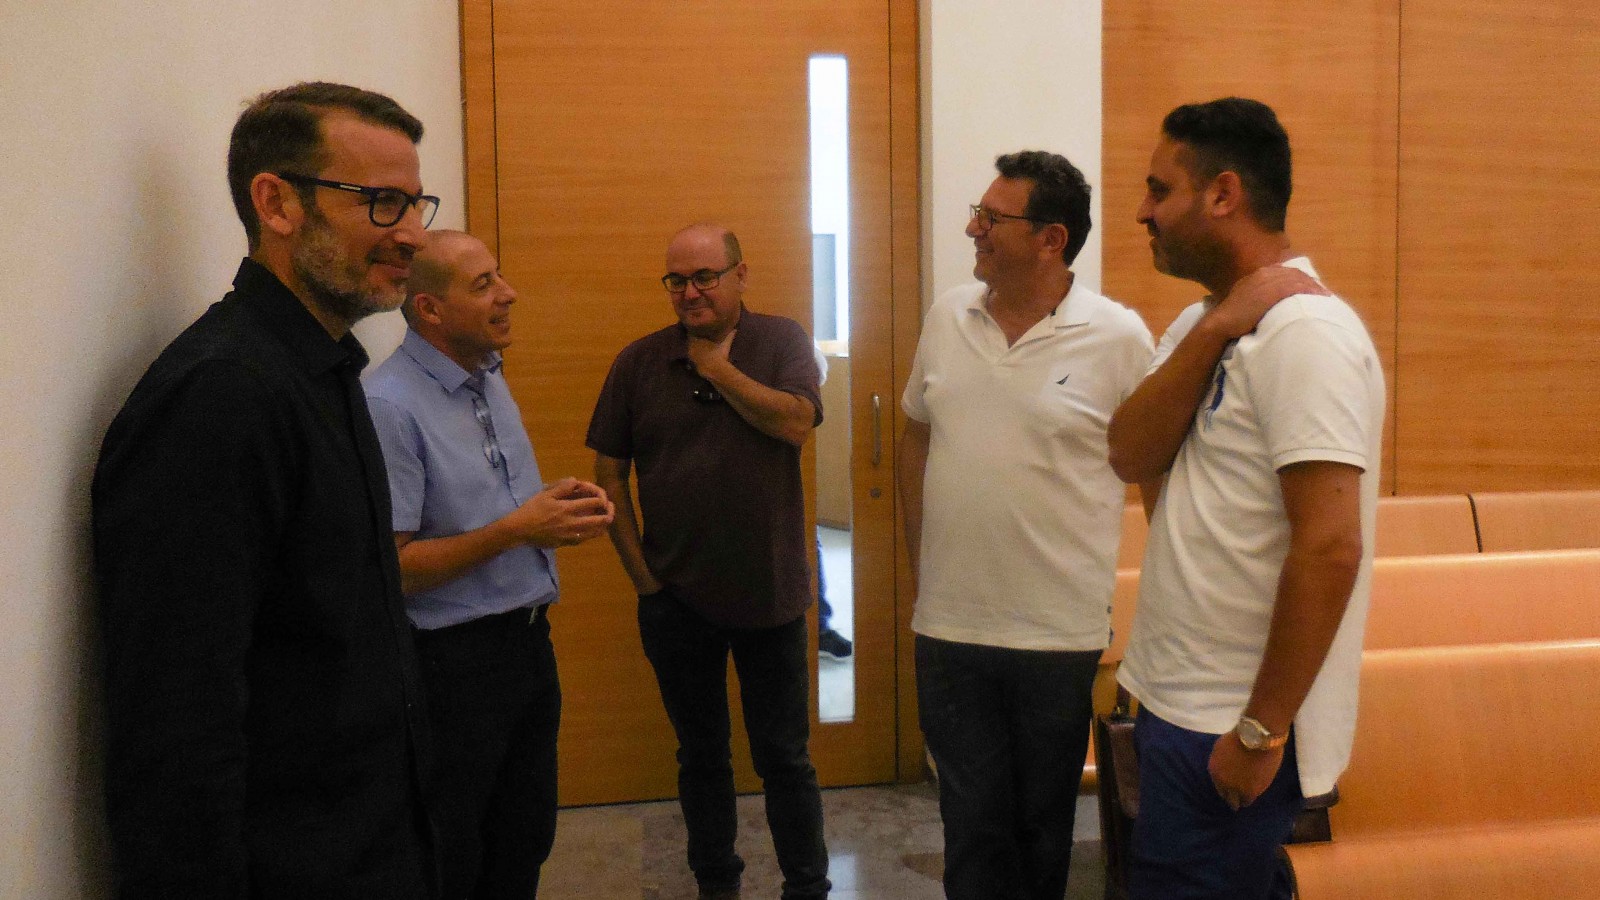 ועד עובדי חברת החשמל וההנהלה בפתח הדיון על העיצומים בבית הדין האזורי לעבודה בחיפה (צילום: ארז רביב)